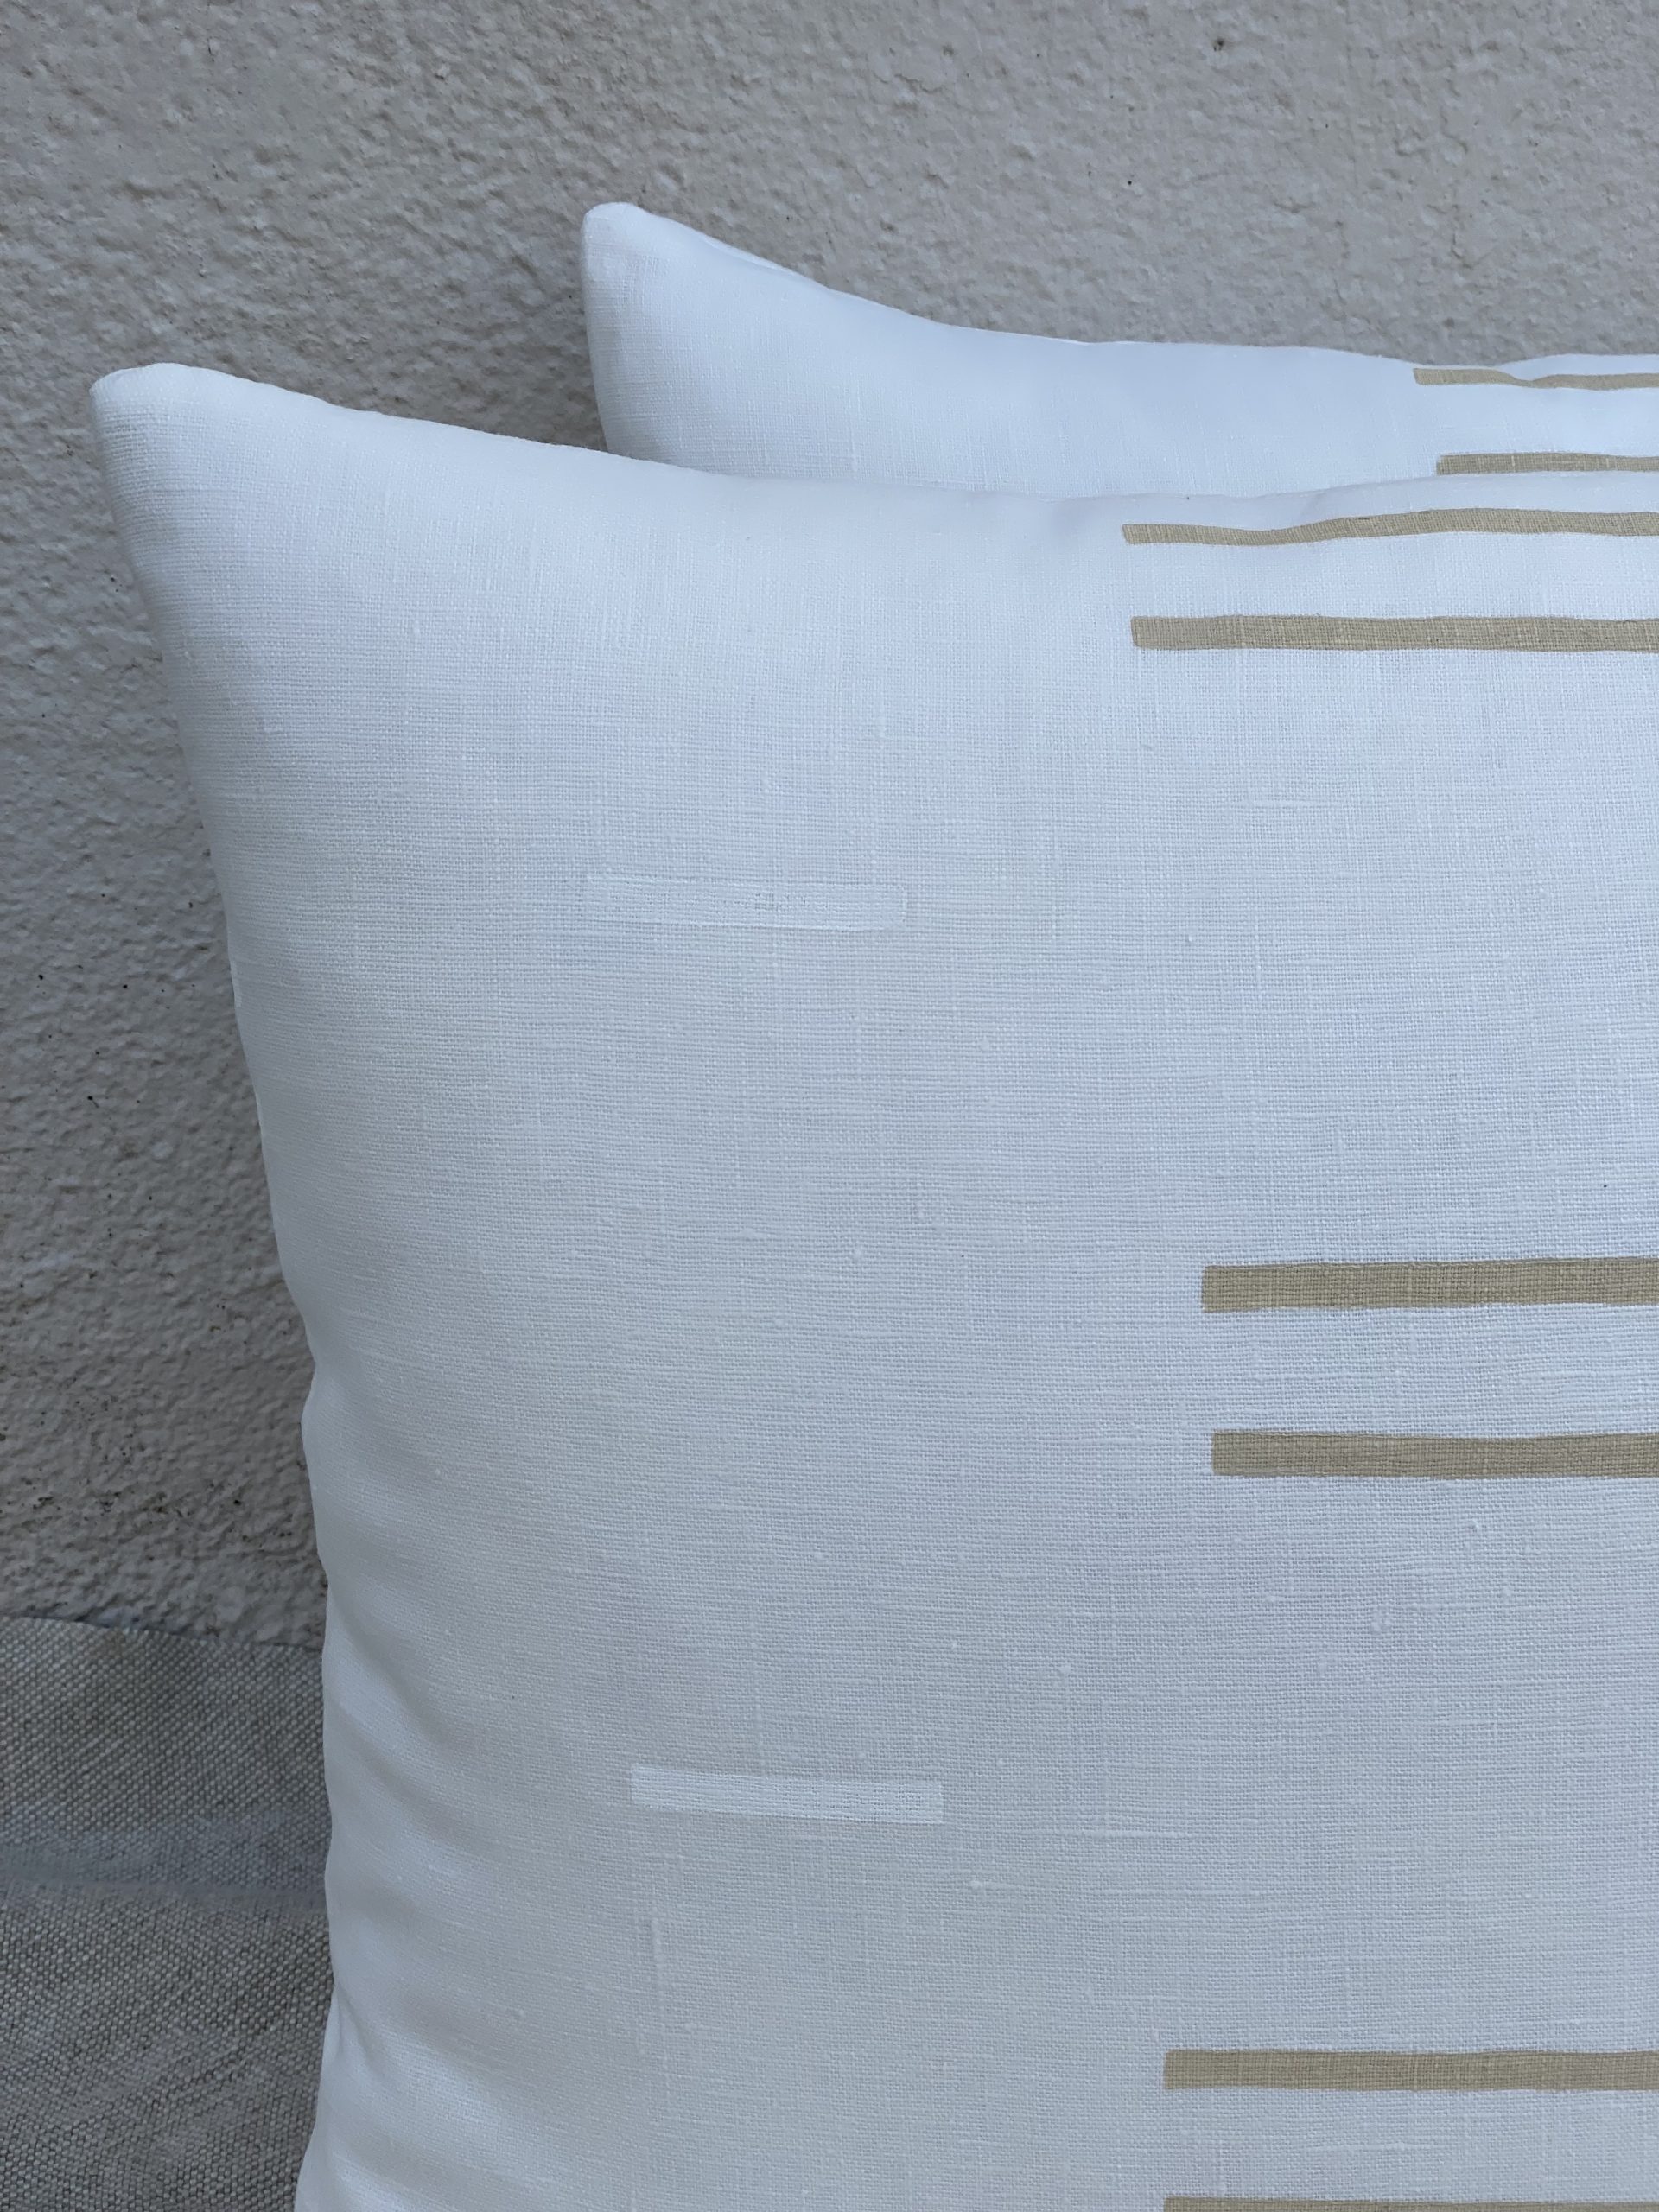 Brooke Abrams Design Pillows